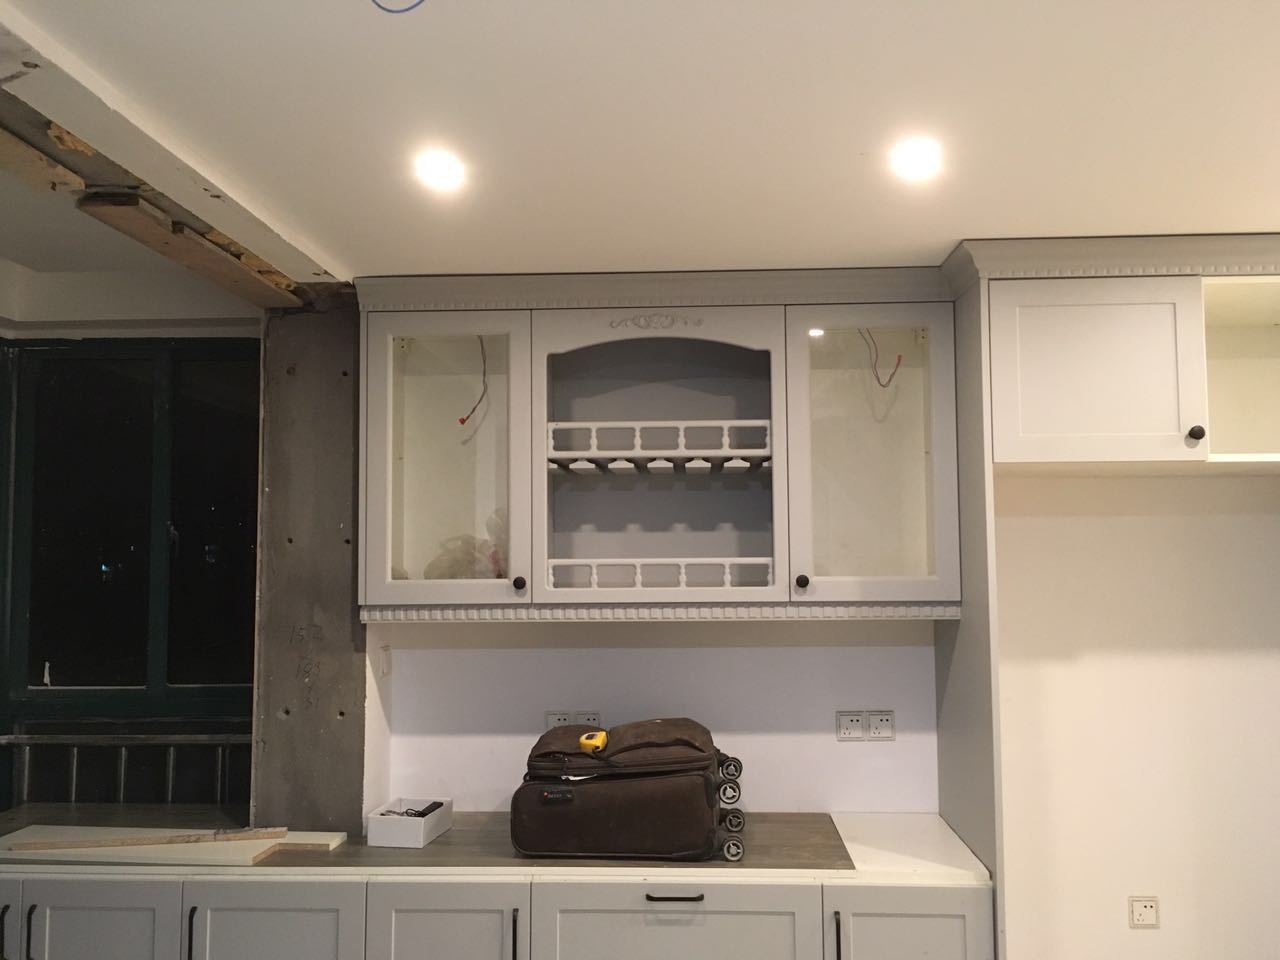 徐小姐家的橱柜正在安装中 整体厨房设计中 除了注意整体照明外